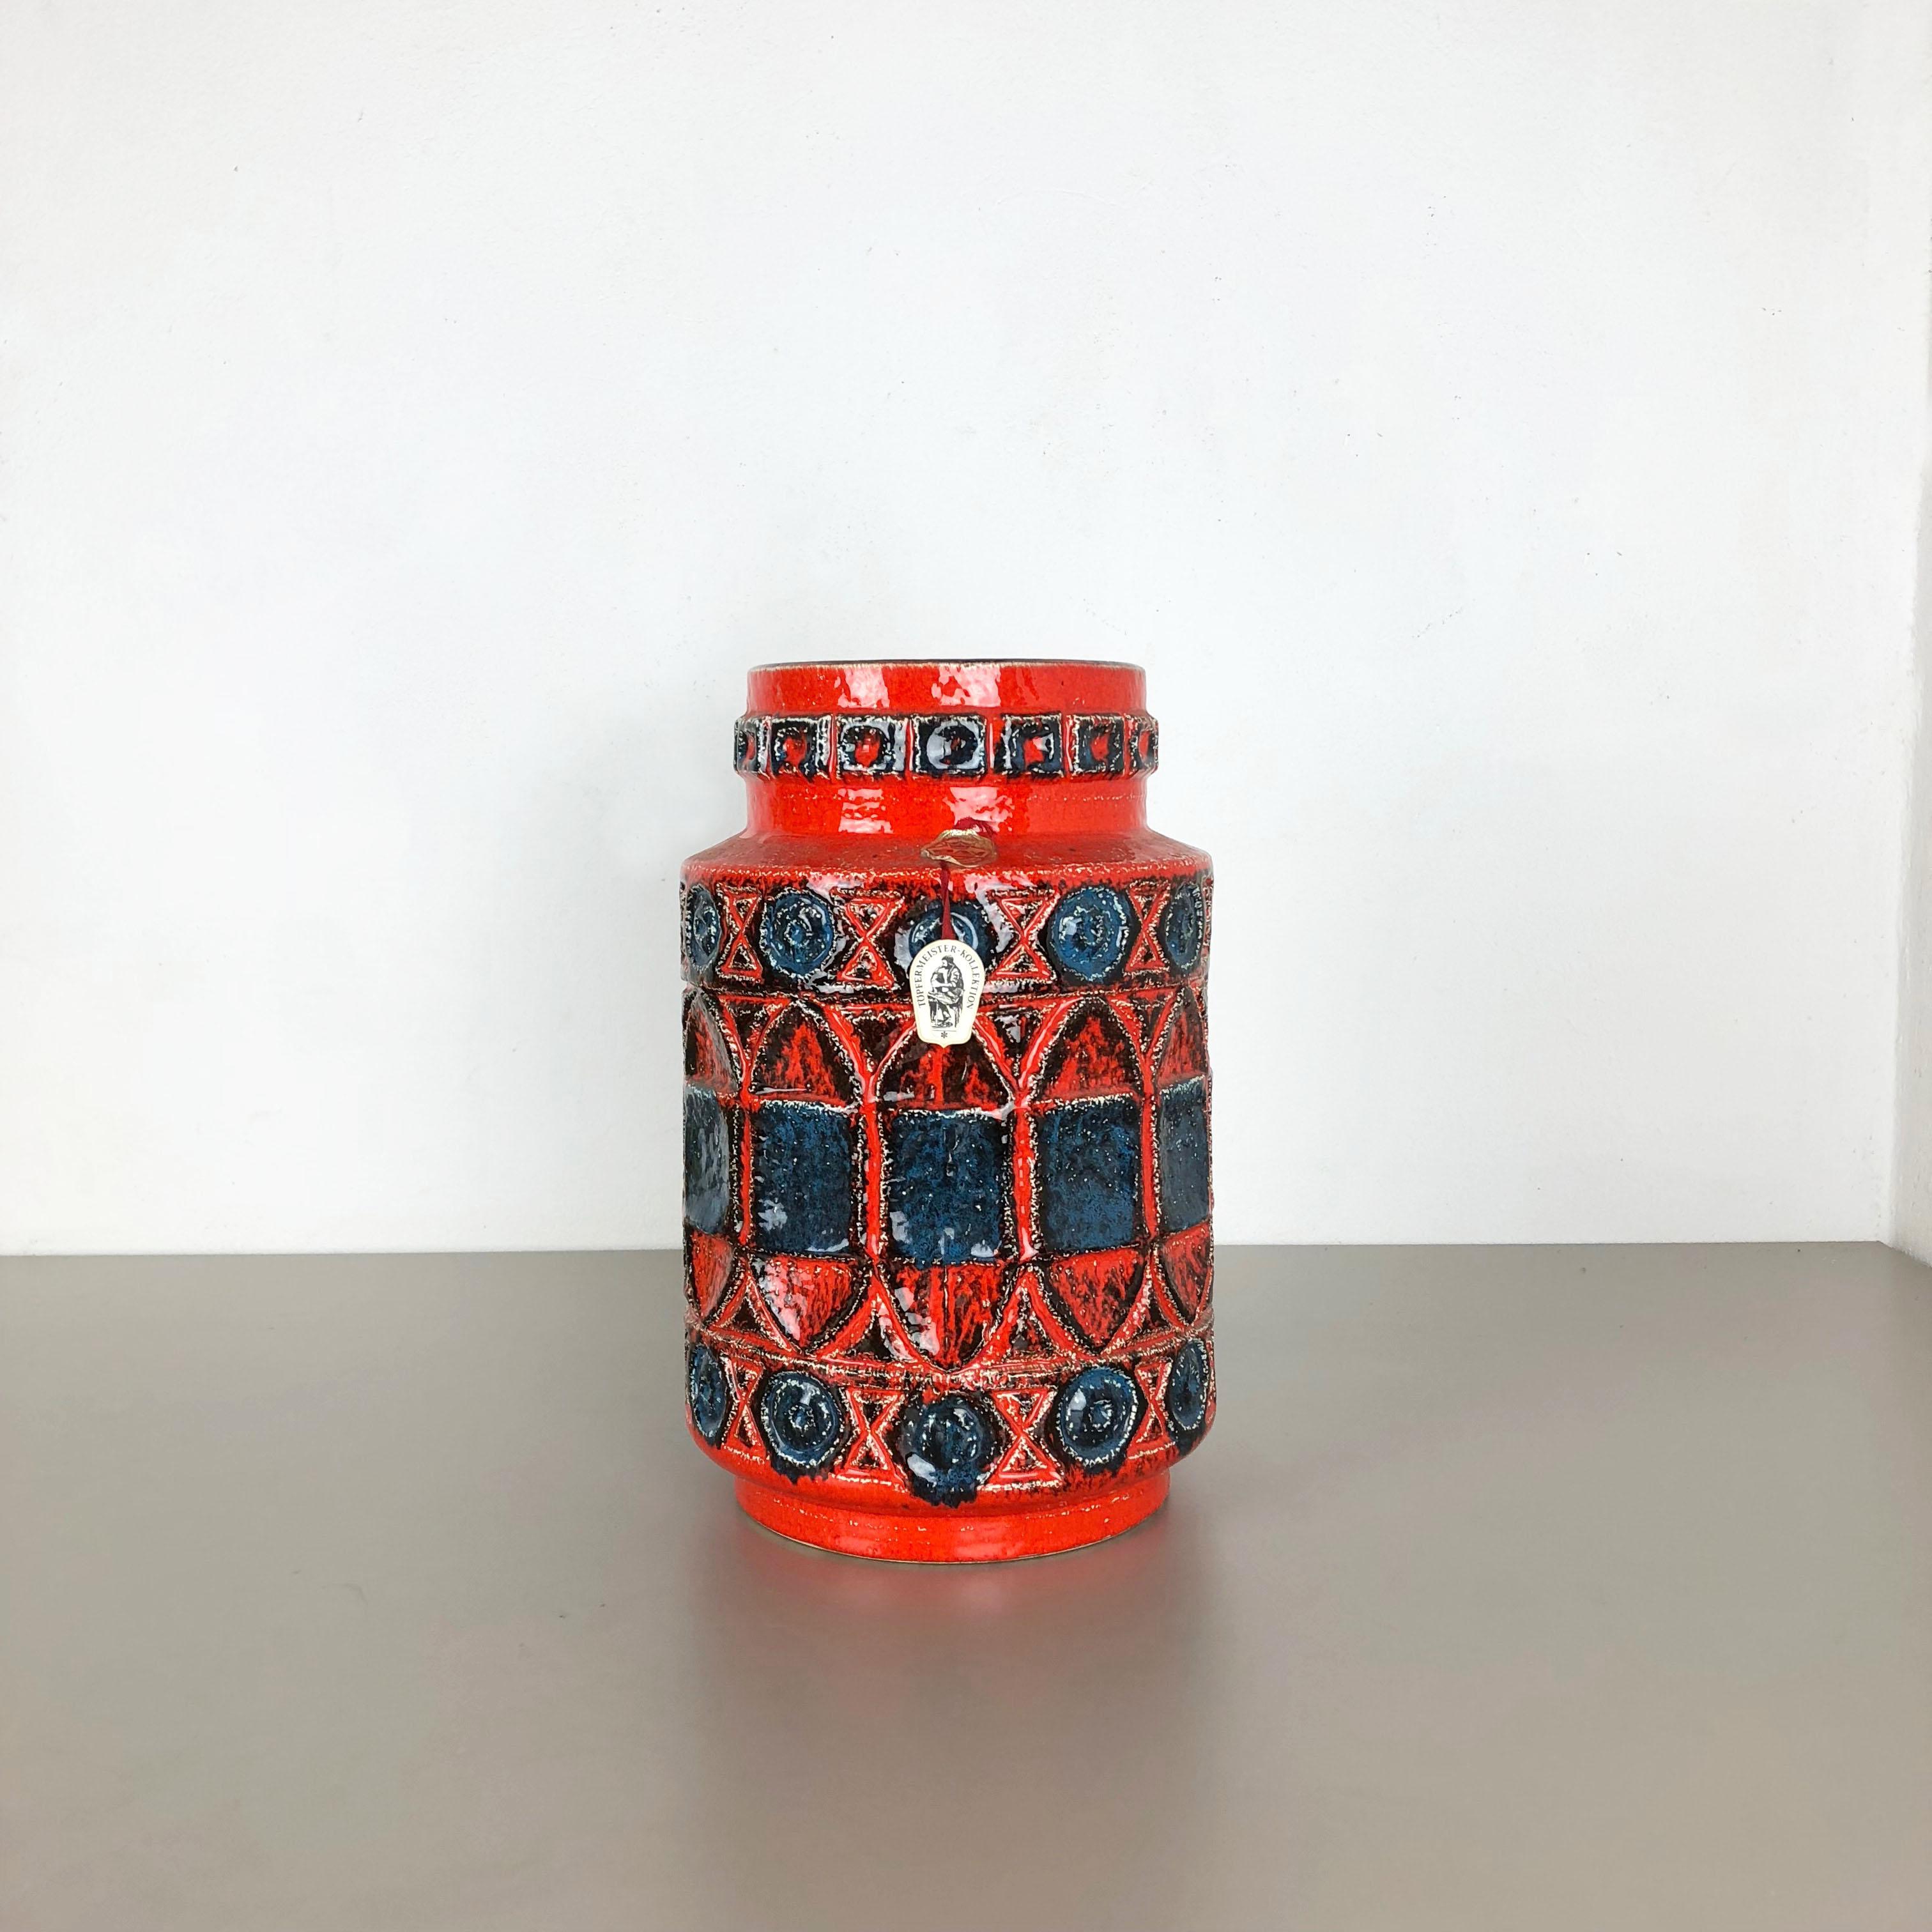 Artikel:

Vase aus Keramik


Produzent:

BAY-Keramik, Deutschland



Jahrzehnt:

1960s




Original 1960er Jahre Keramikvase aus Deutschland. Hochwertige deutsche Produktion mit schöner abstrakter Malerei und super bunter